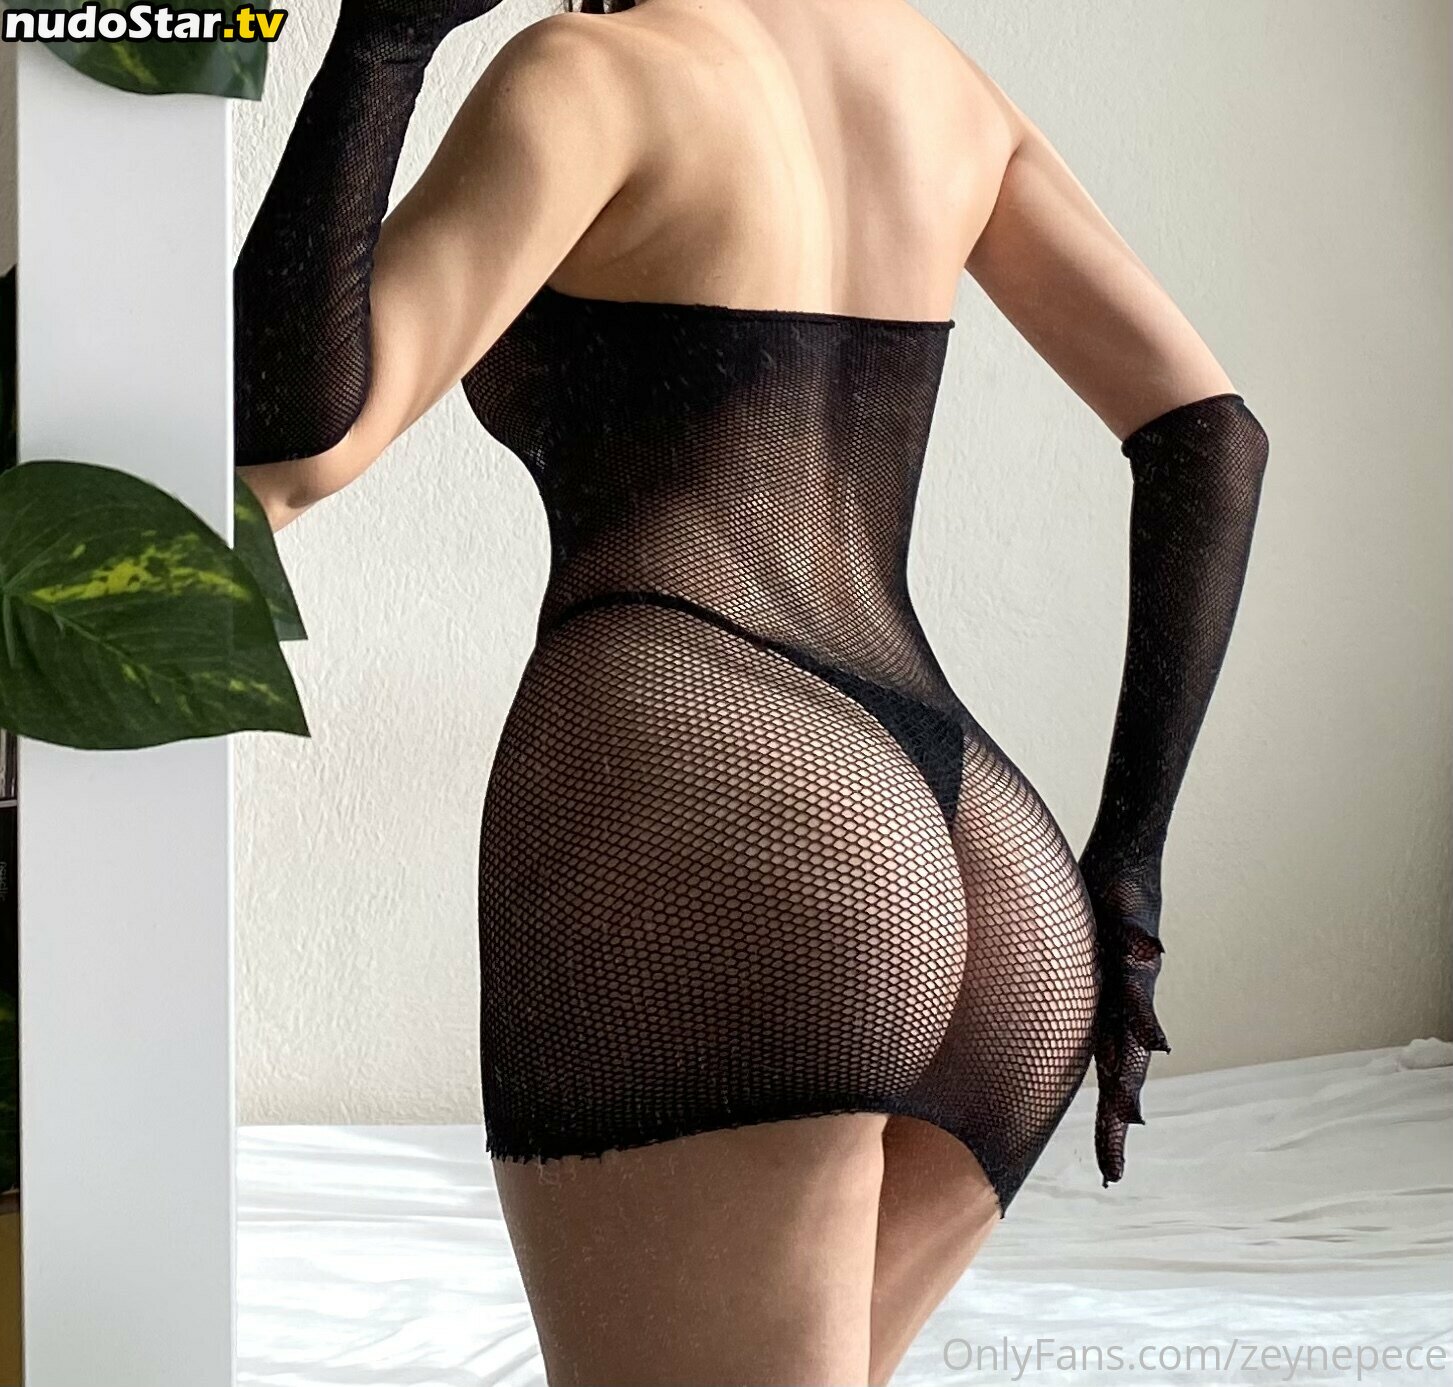 https: / zeeynepece / zeynepece Nude OnlyFans Leaked Photo #145